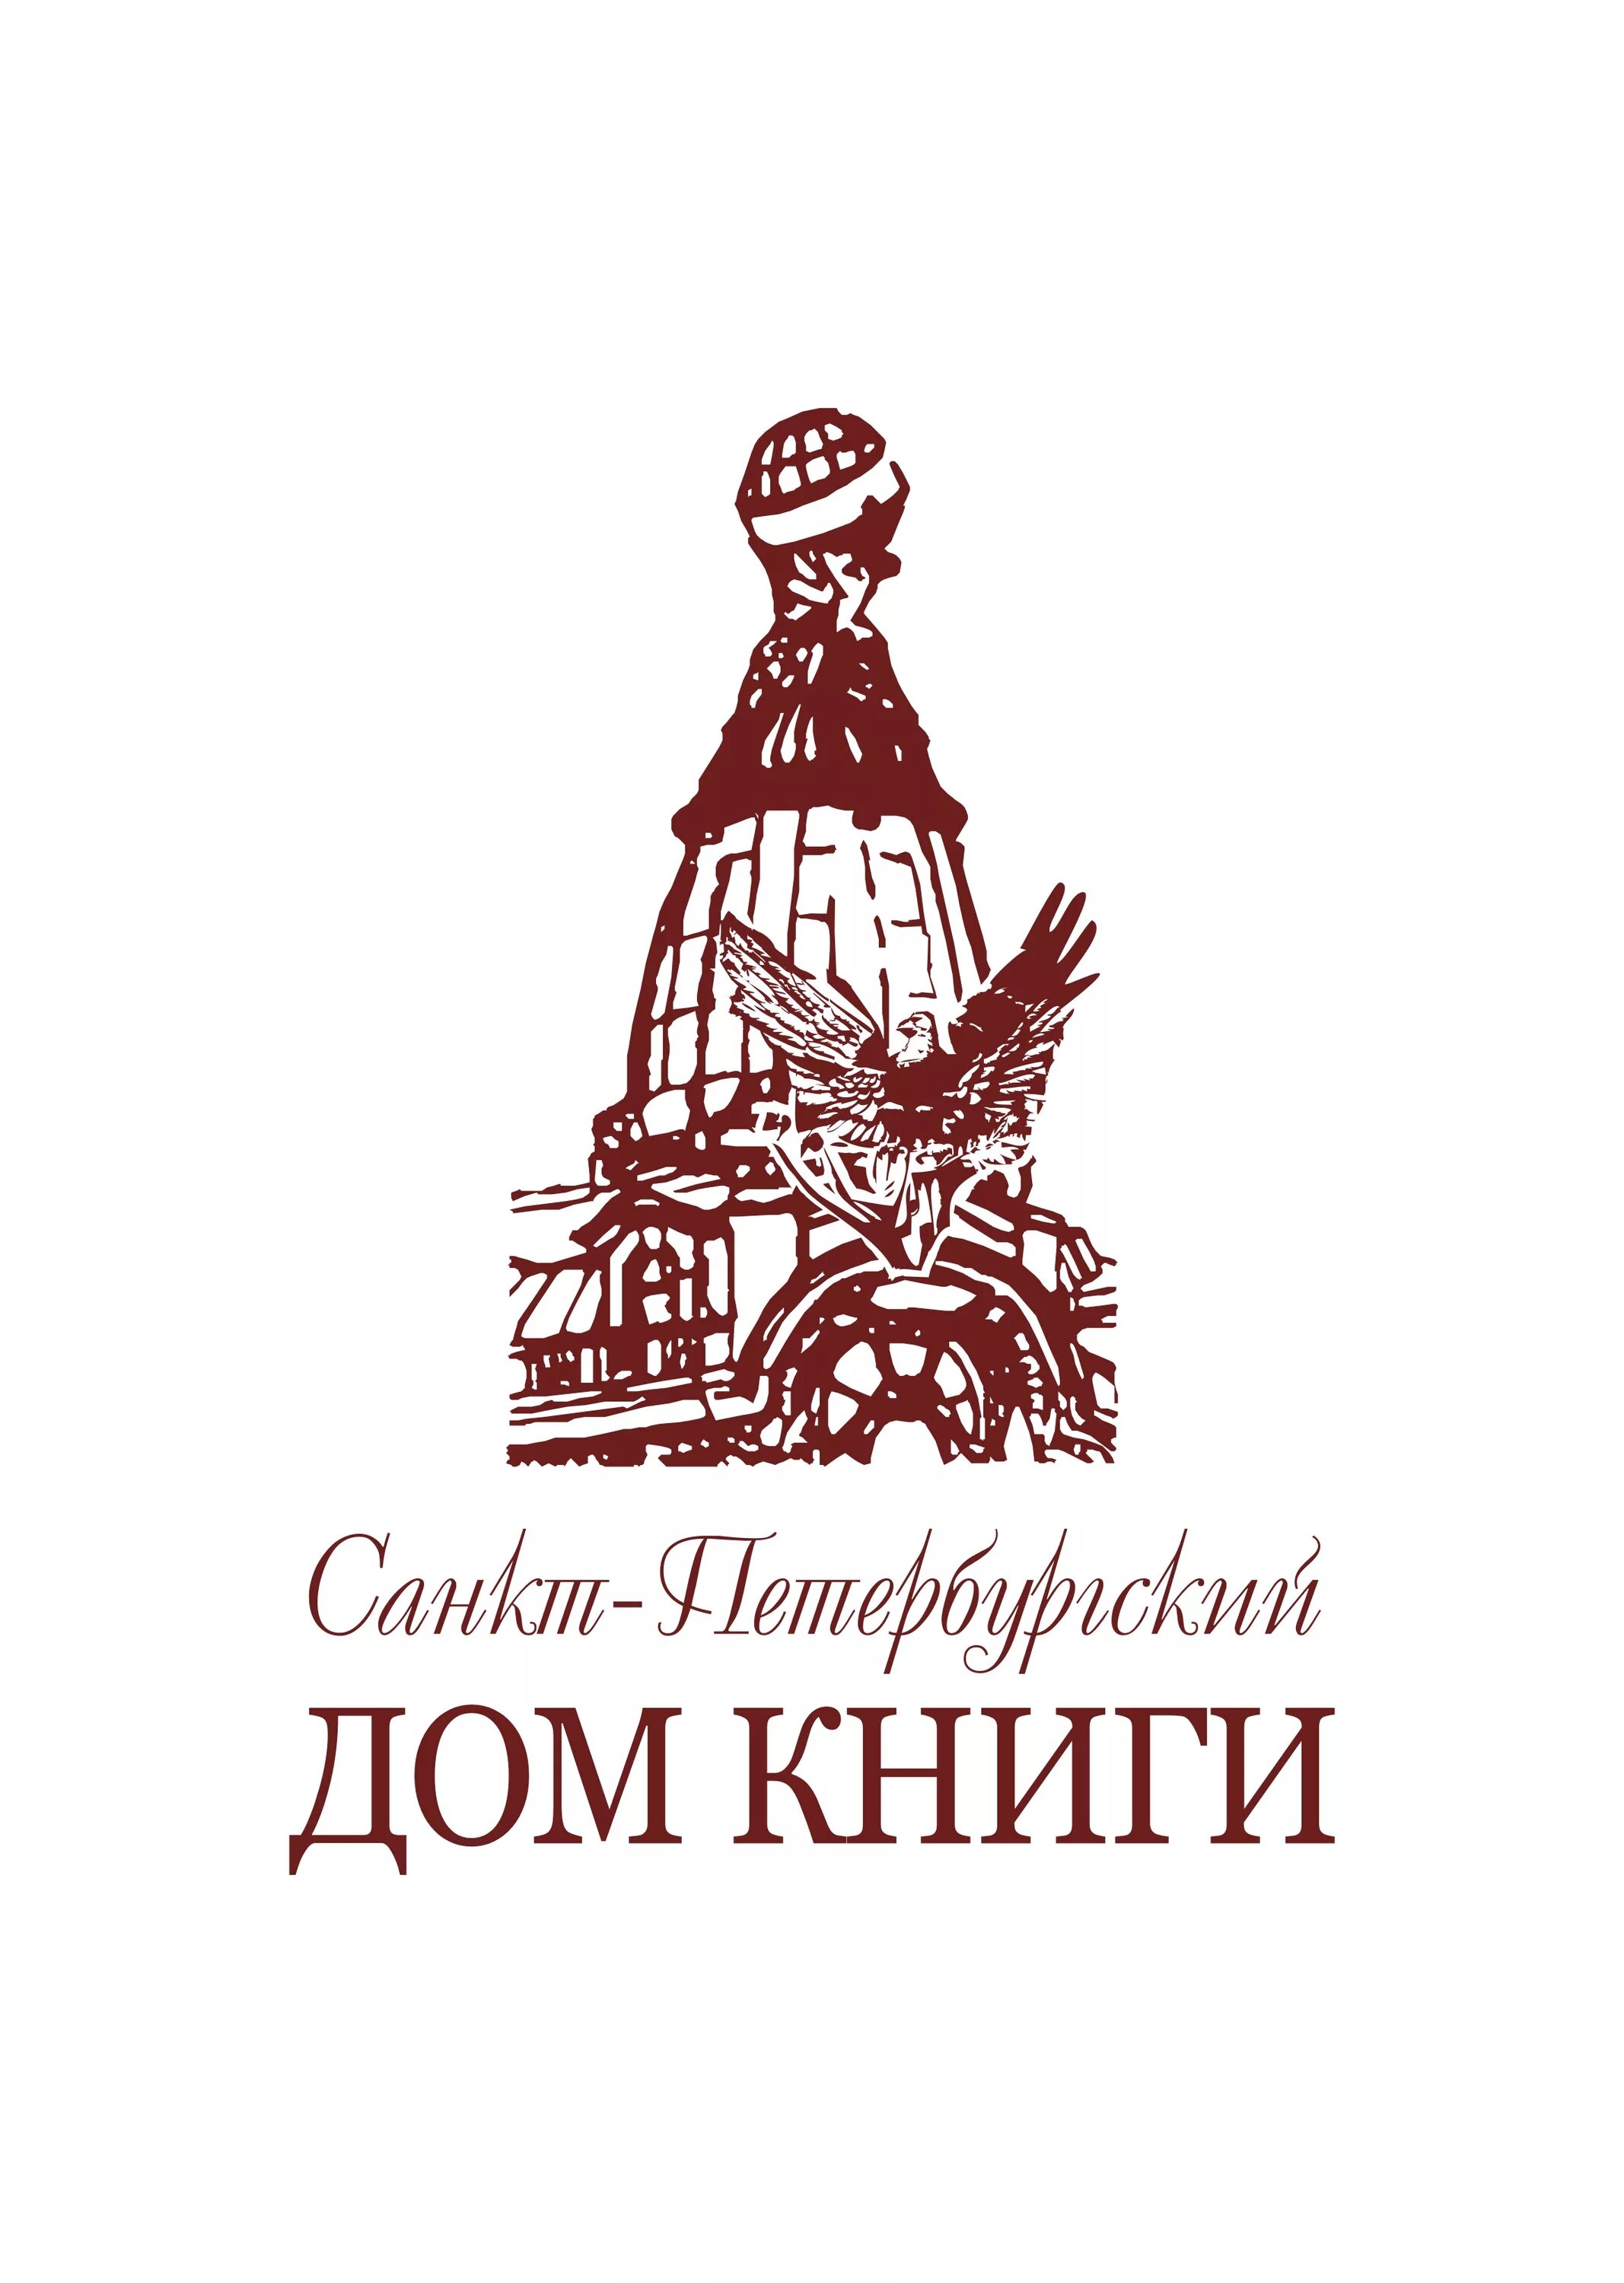 Дом книги логотип. Санкт-Петербургский дом книги логотип. Логотип для книжного дома. Логотипы книжных издательств.